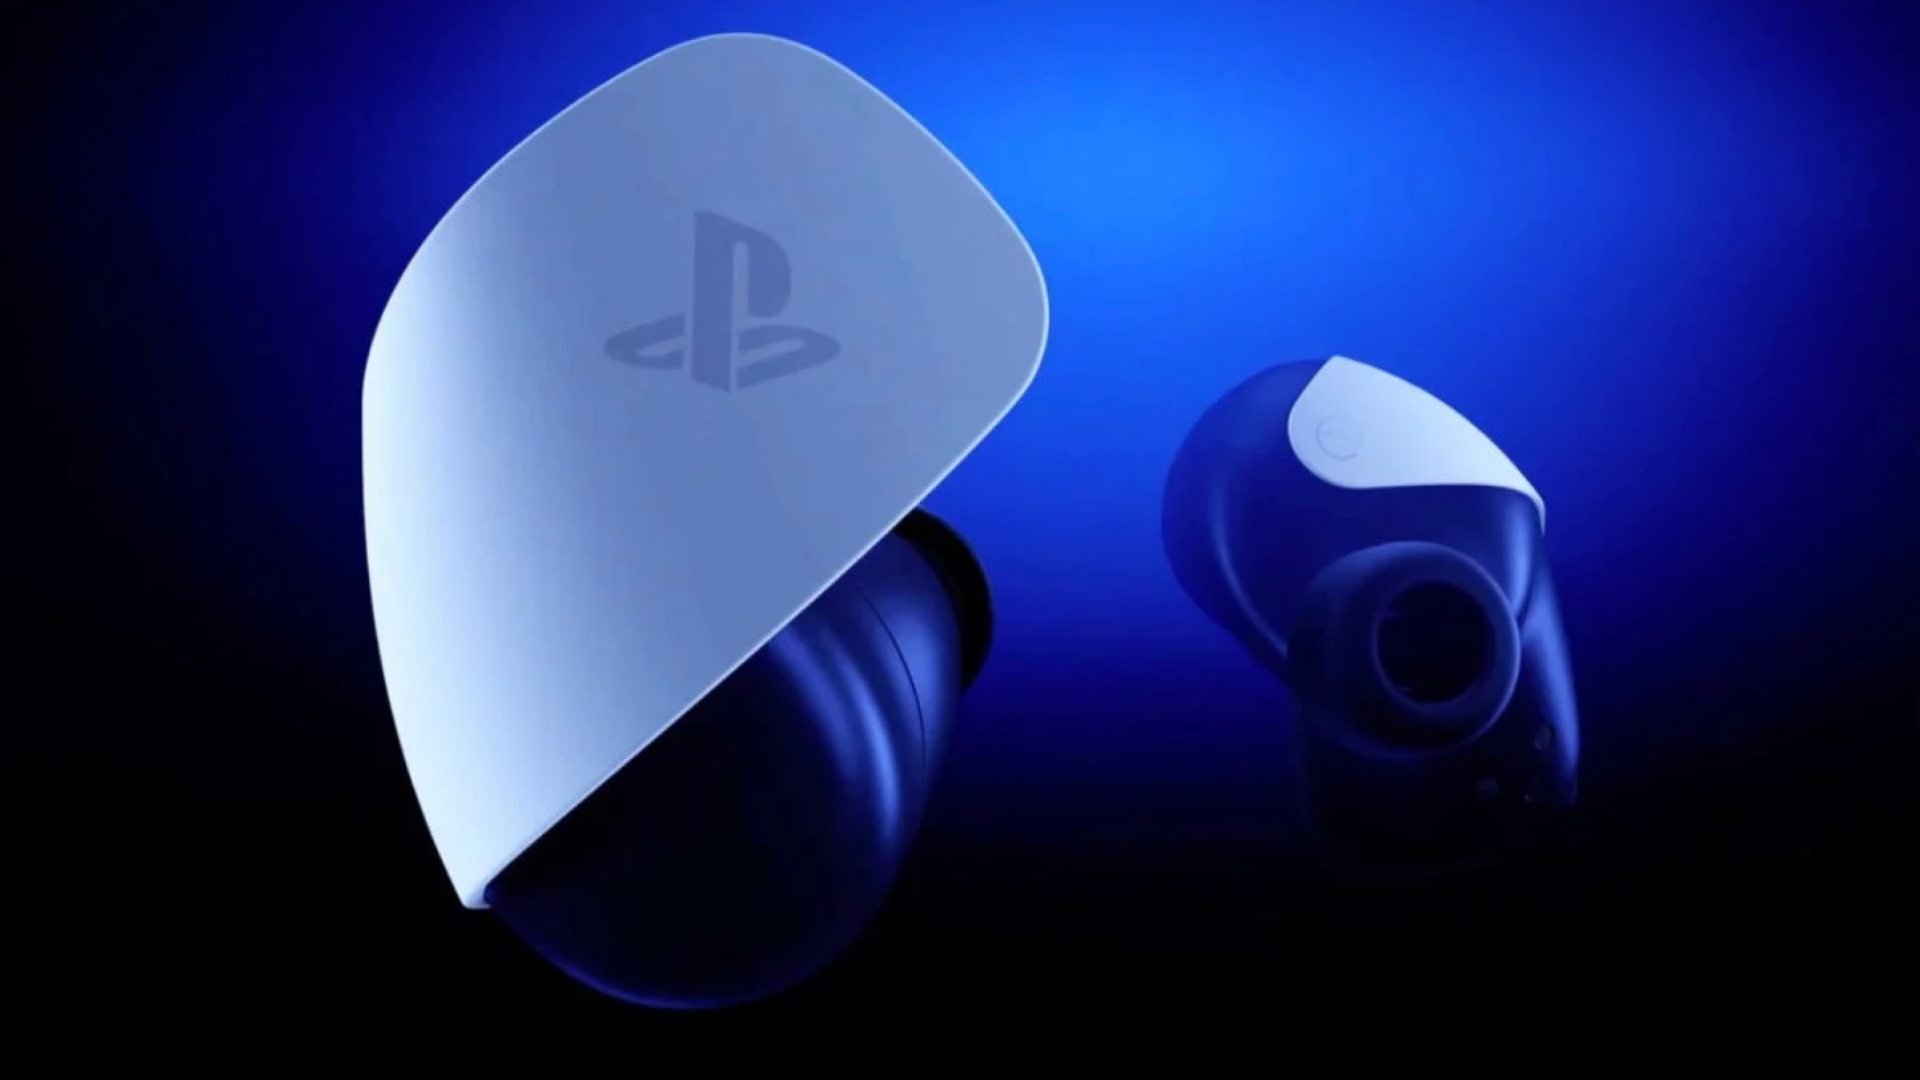 PlayStation Earbuds, presto avremo gli auricolari ufficiali di PS5